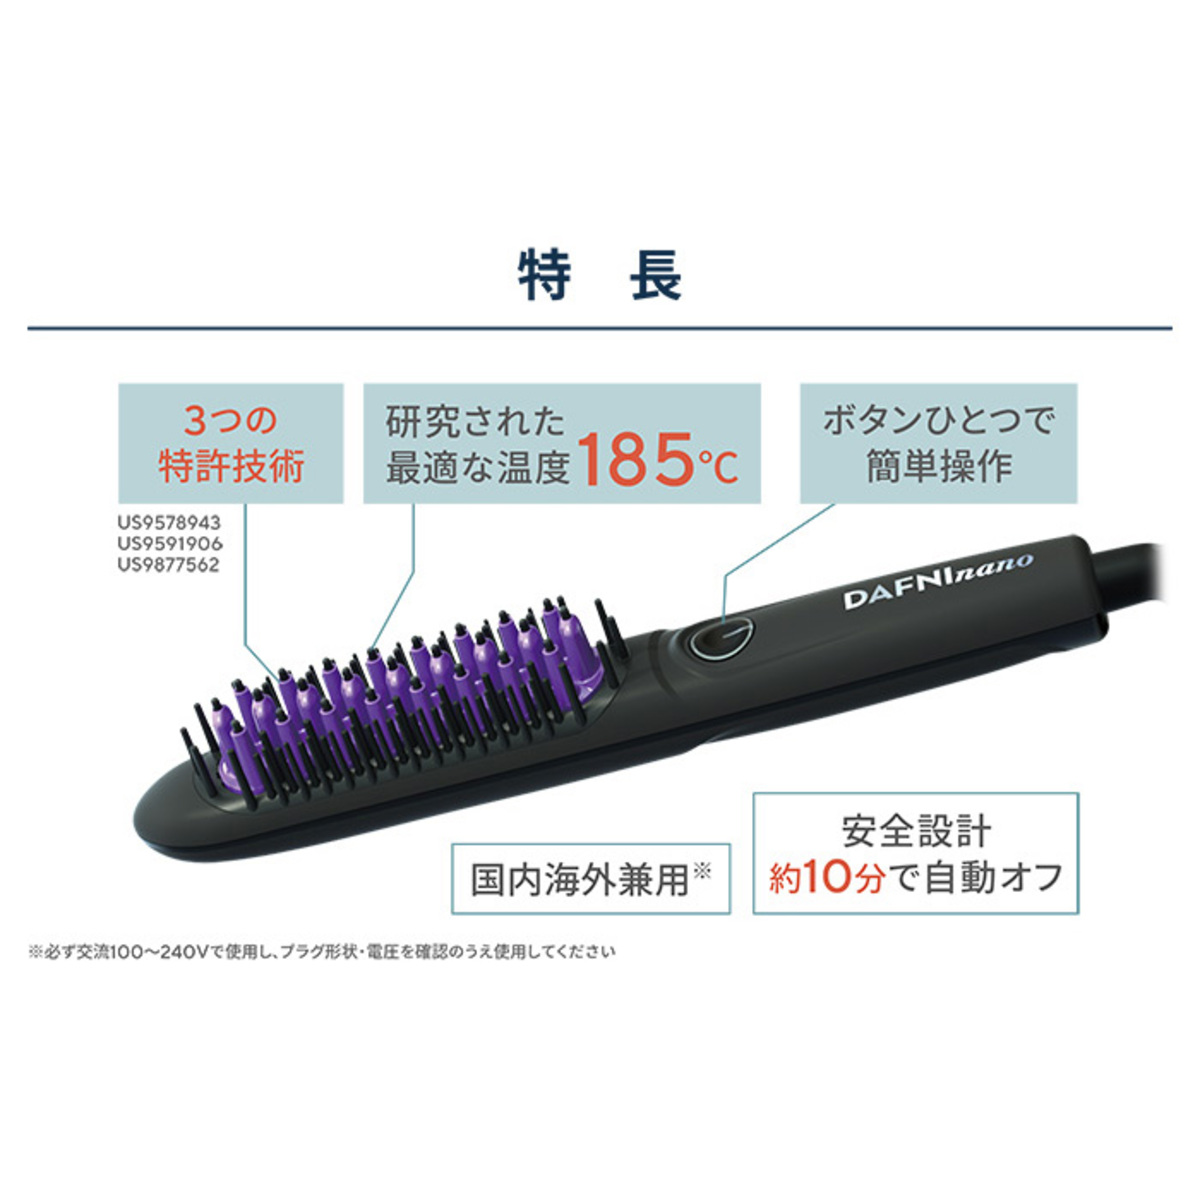 髪をとかすだけ！ブラシ型ヘアアイロン「ダフニNANO」 ダフニ（DAFNI） - QVC.jp